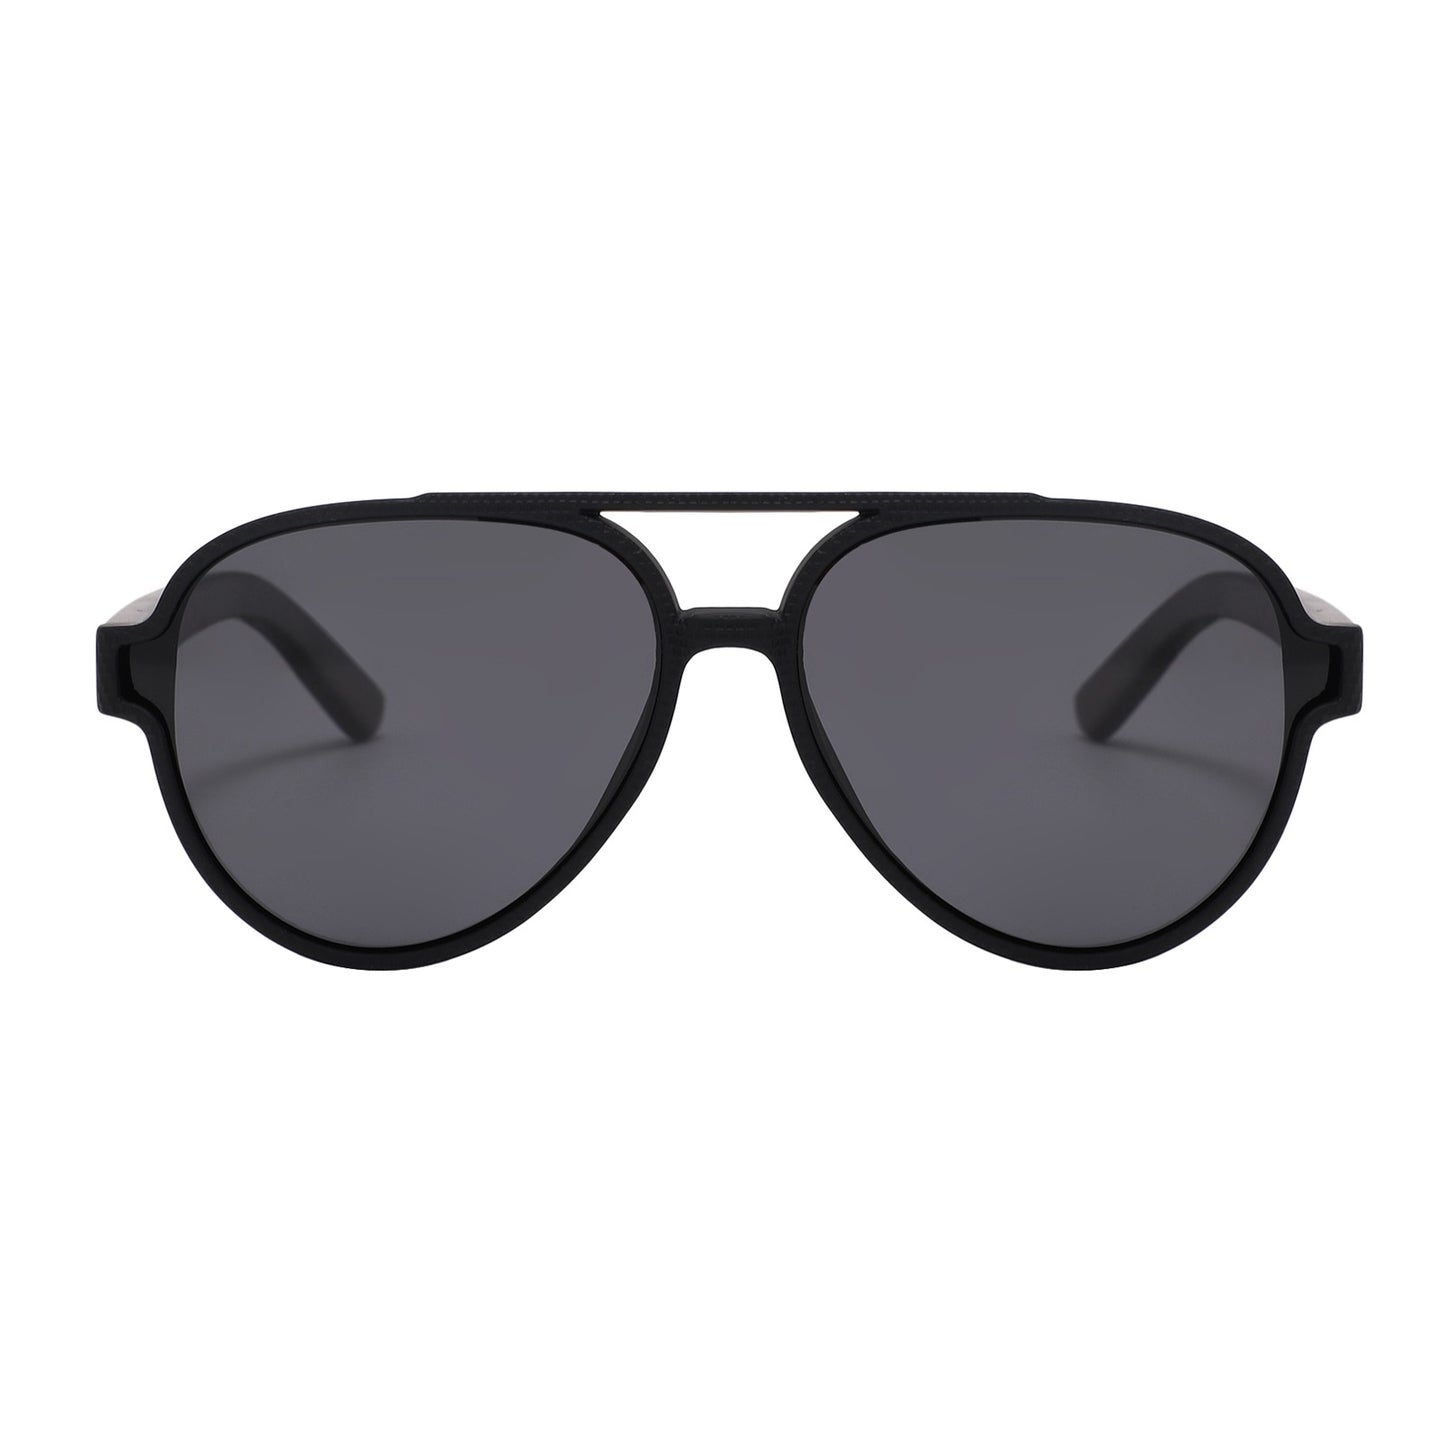 CAPRI BLACK Sunglasses Polarised Lens Wooden Arms